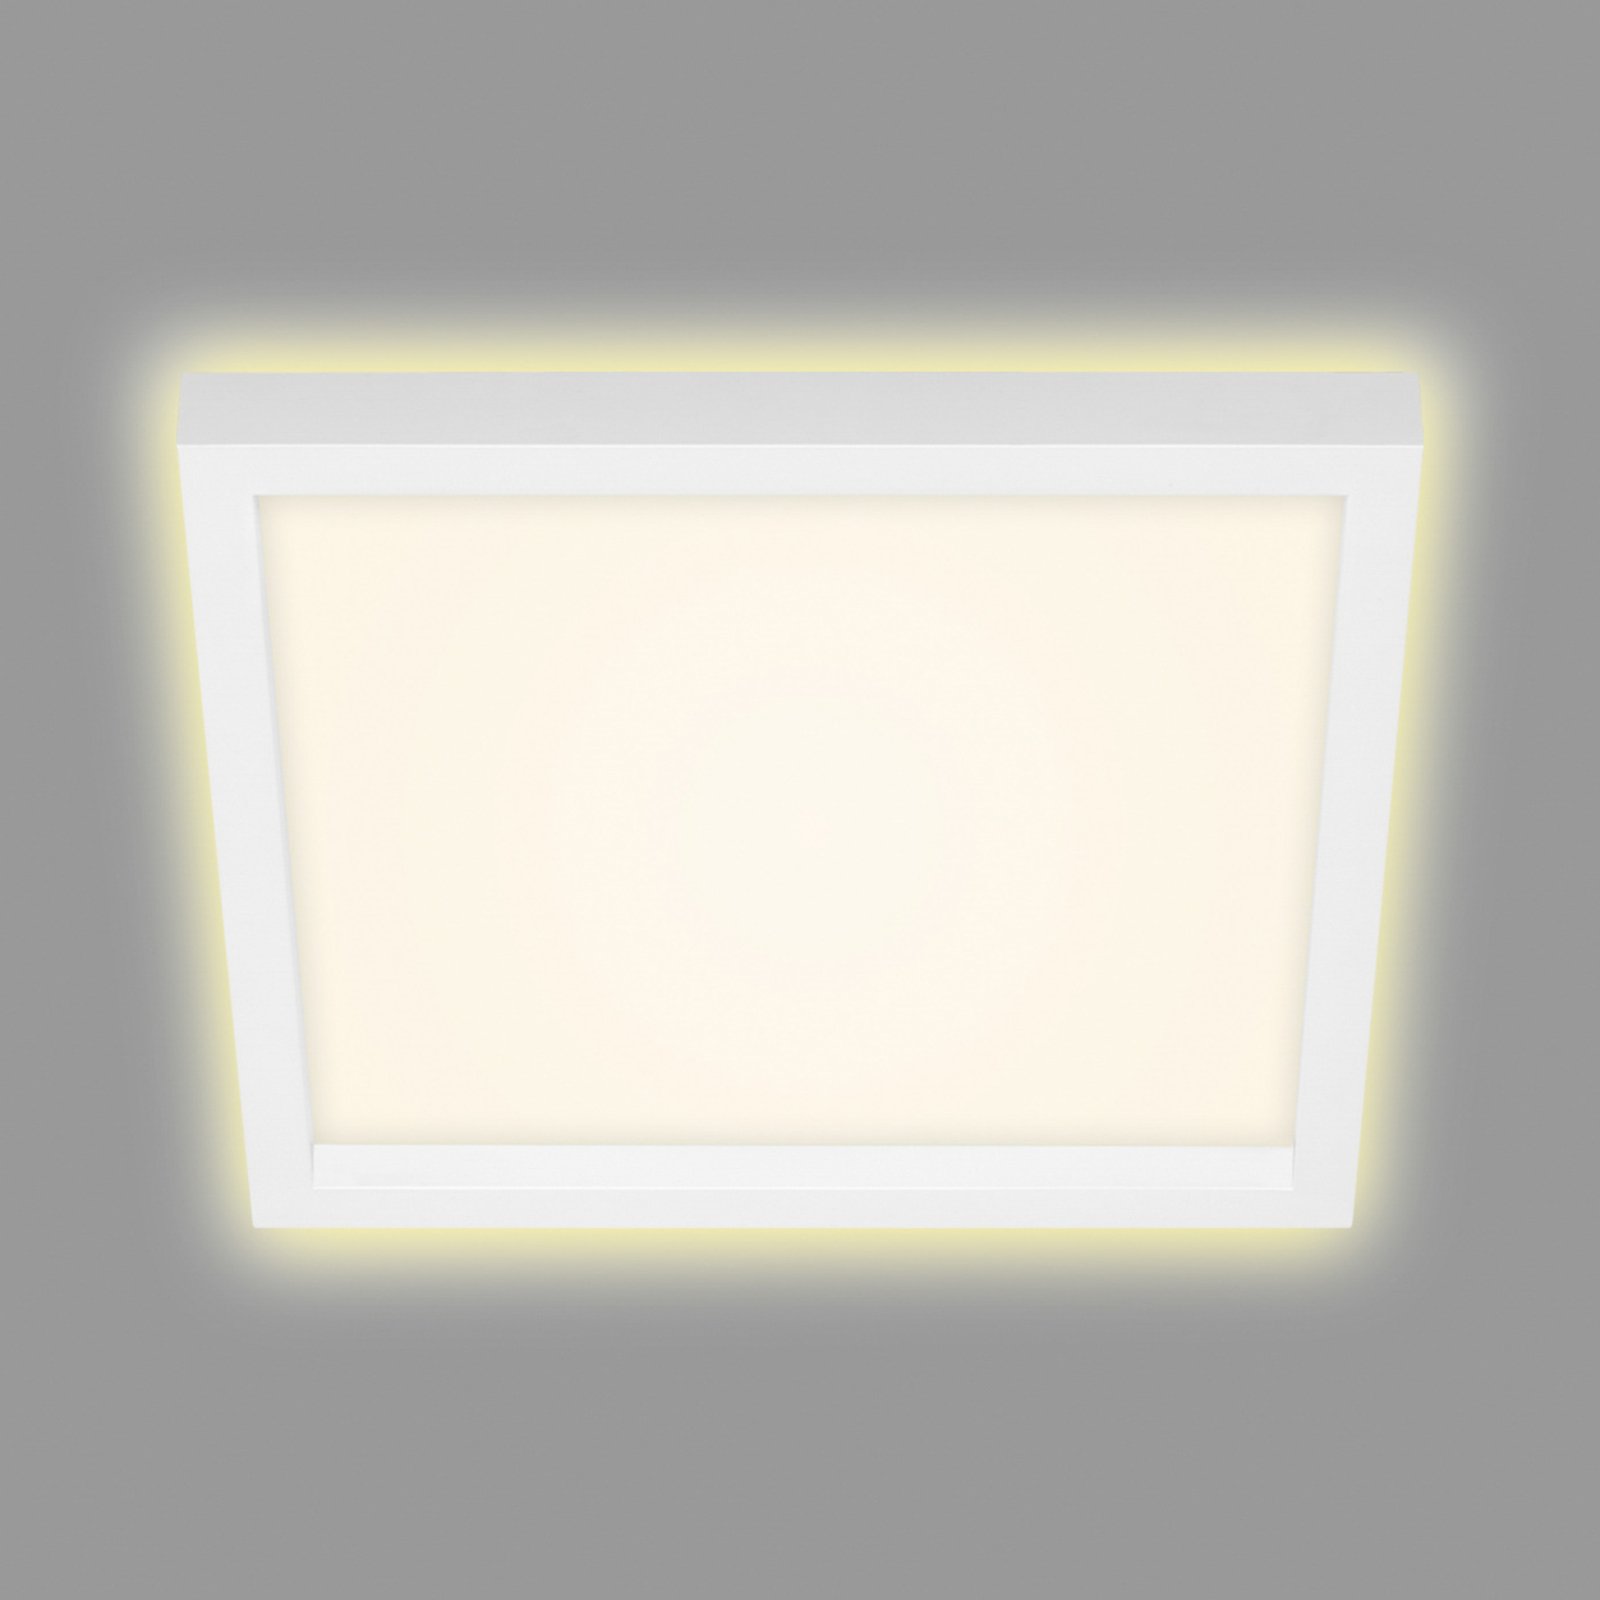 7362 LED ceiling lamp, 29 x 29 cm, white